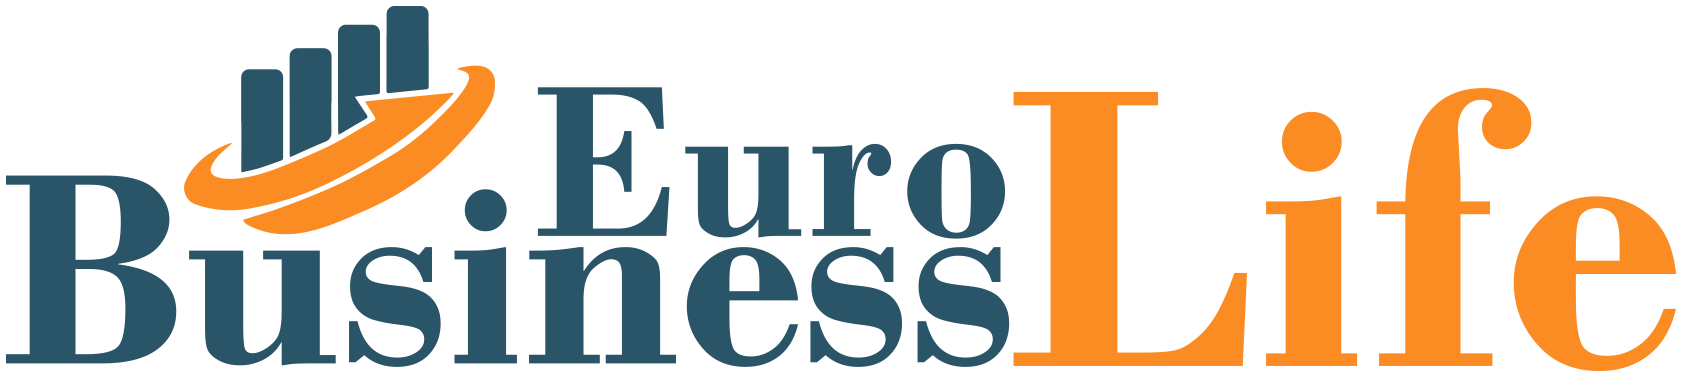 Euro Business Life | Dünya'daki iş insanları ve şirket haber portalı